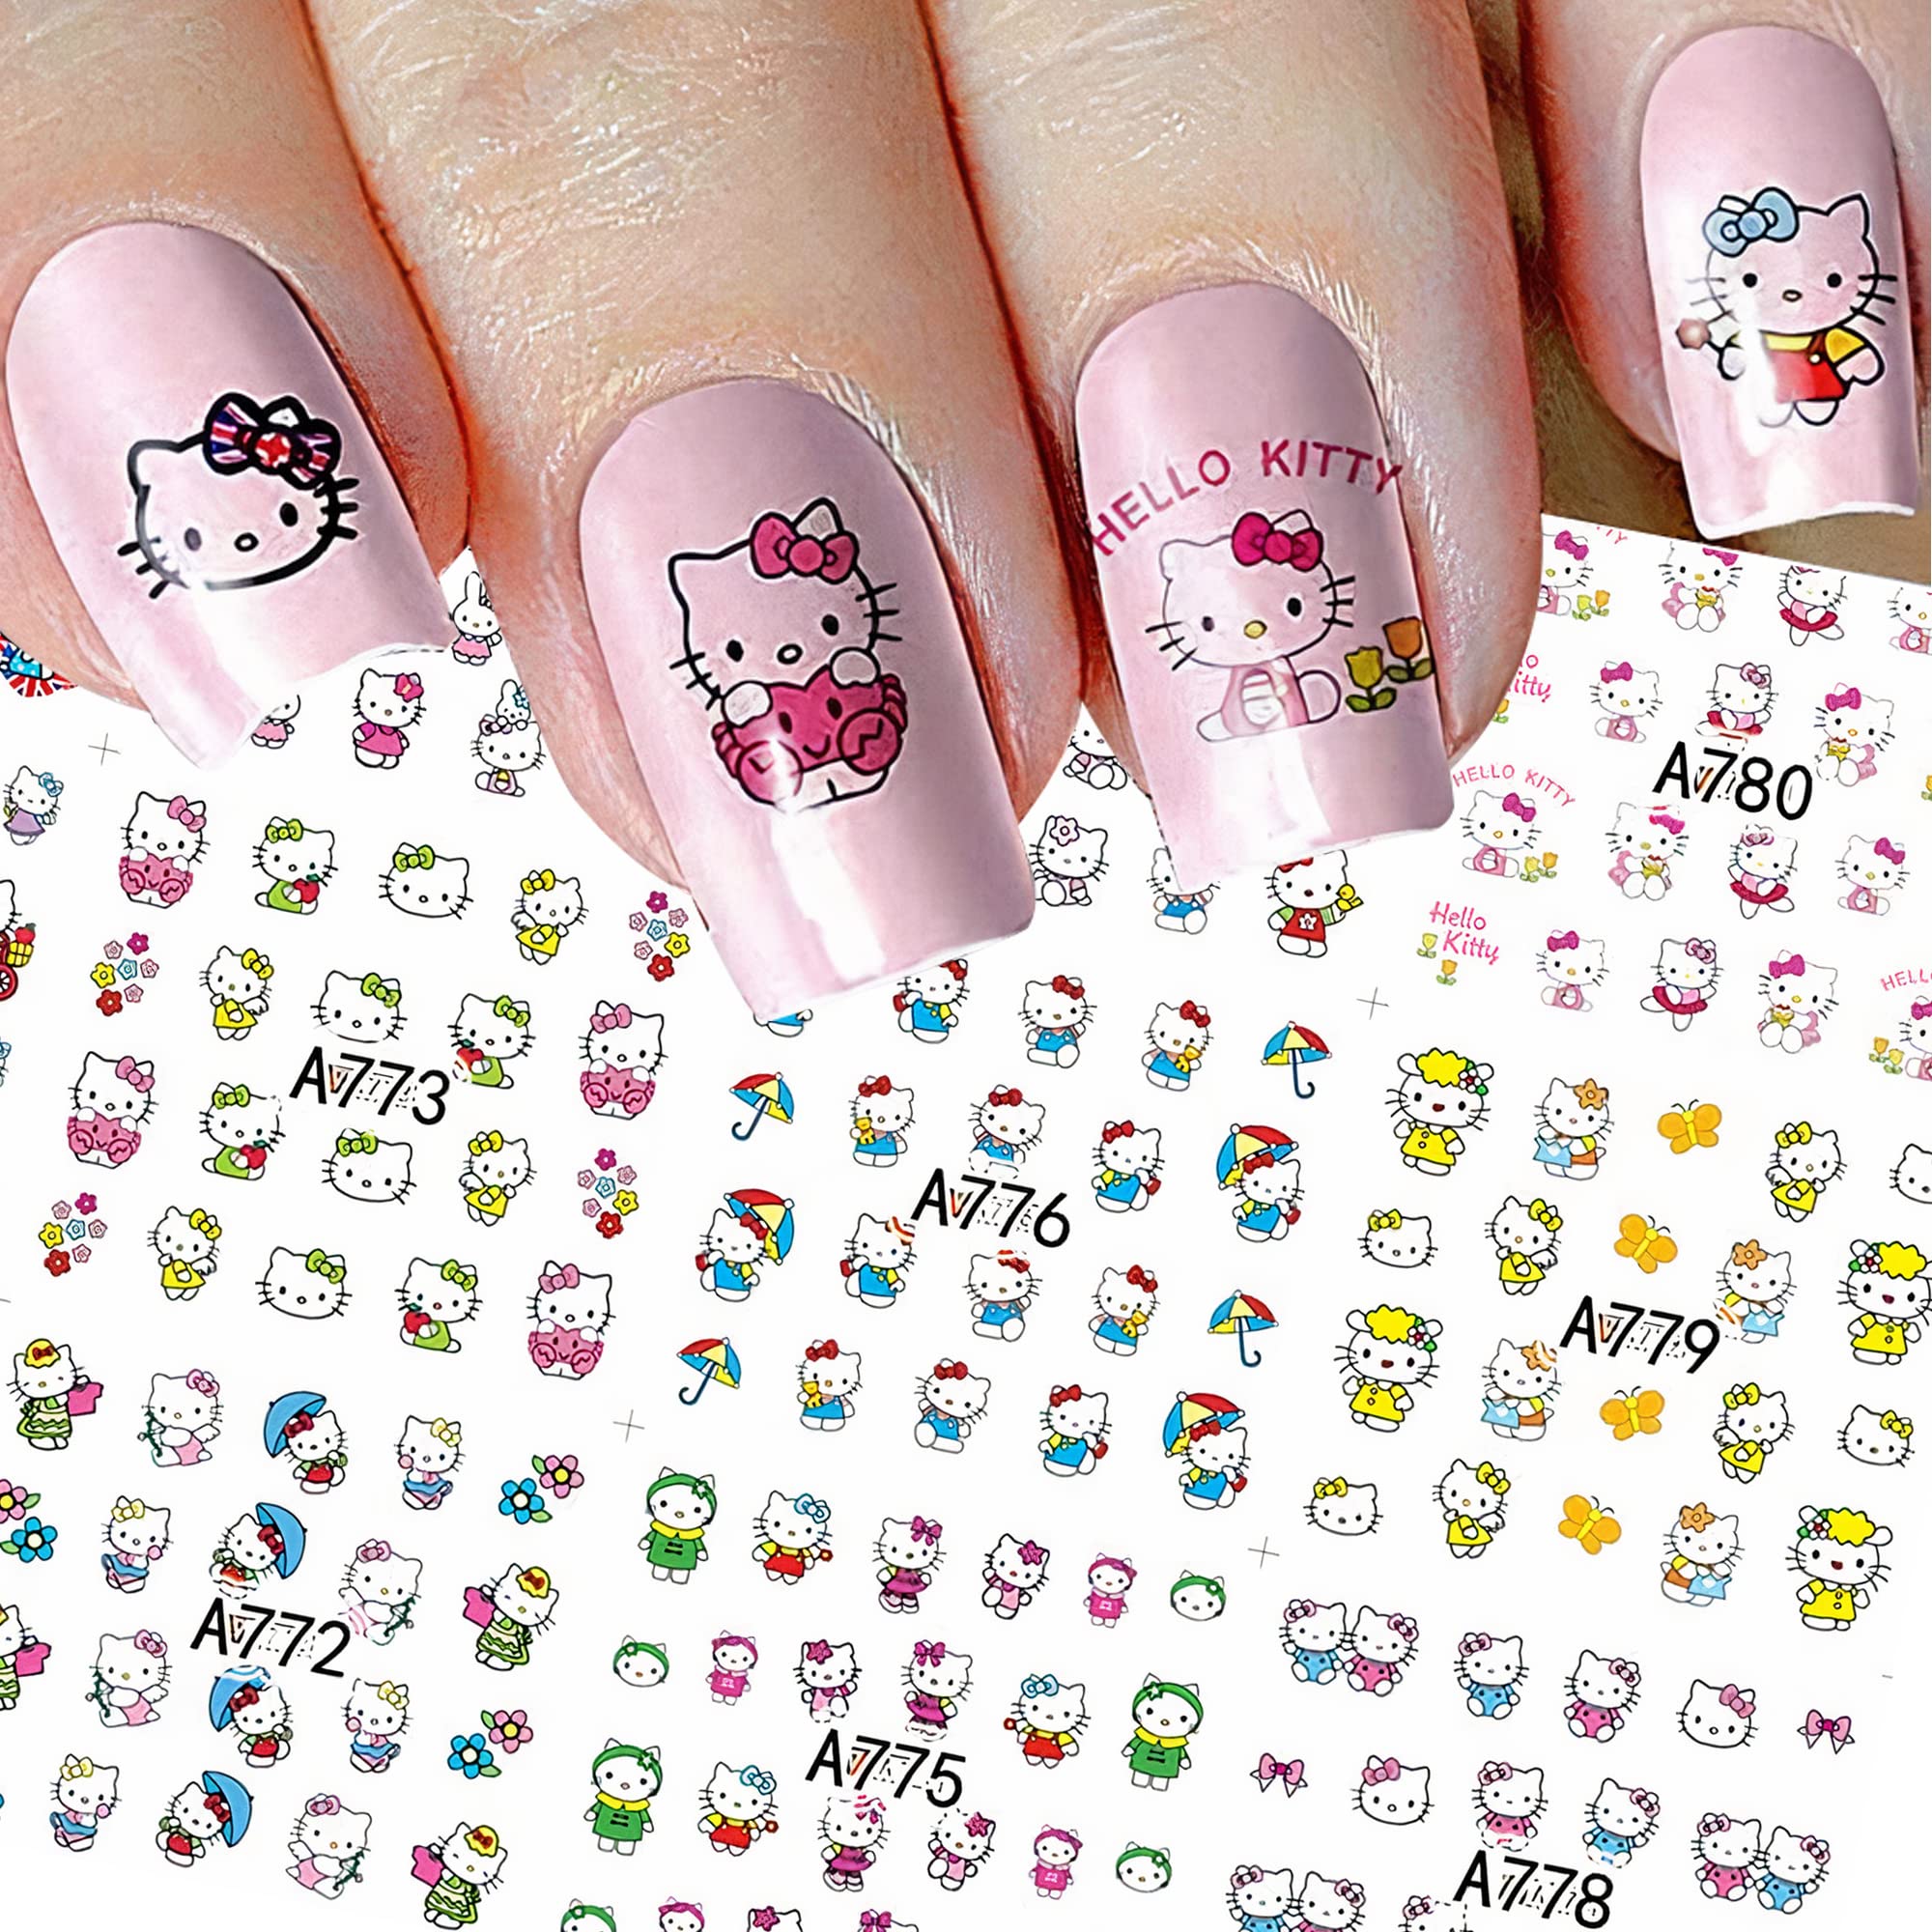 Tem móng Hello Kitty sẽ khiến đôi móng tay của bạn trở nên khác biệt và thu hút người khác. Hãy cùng xem những thiết kế tuyệt đẹp và đắt giá của chúng tôi với mẫu tem Hello Kitty.